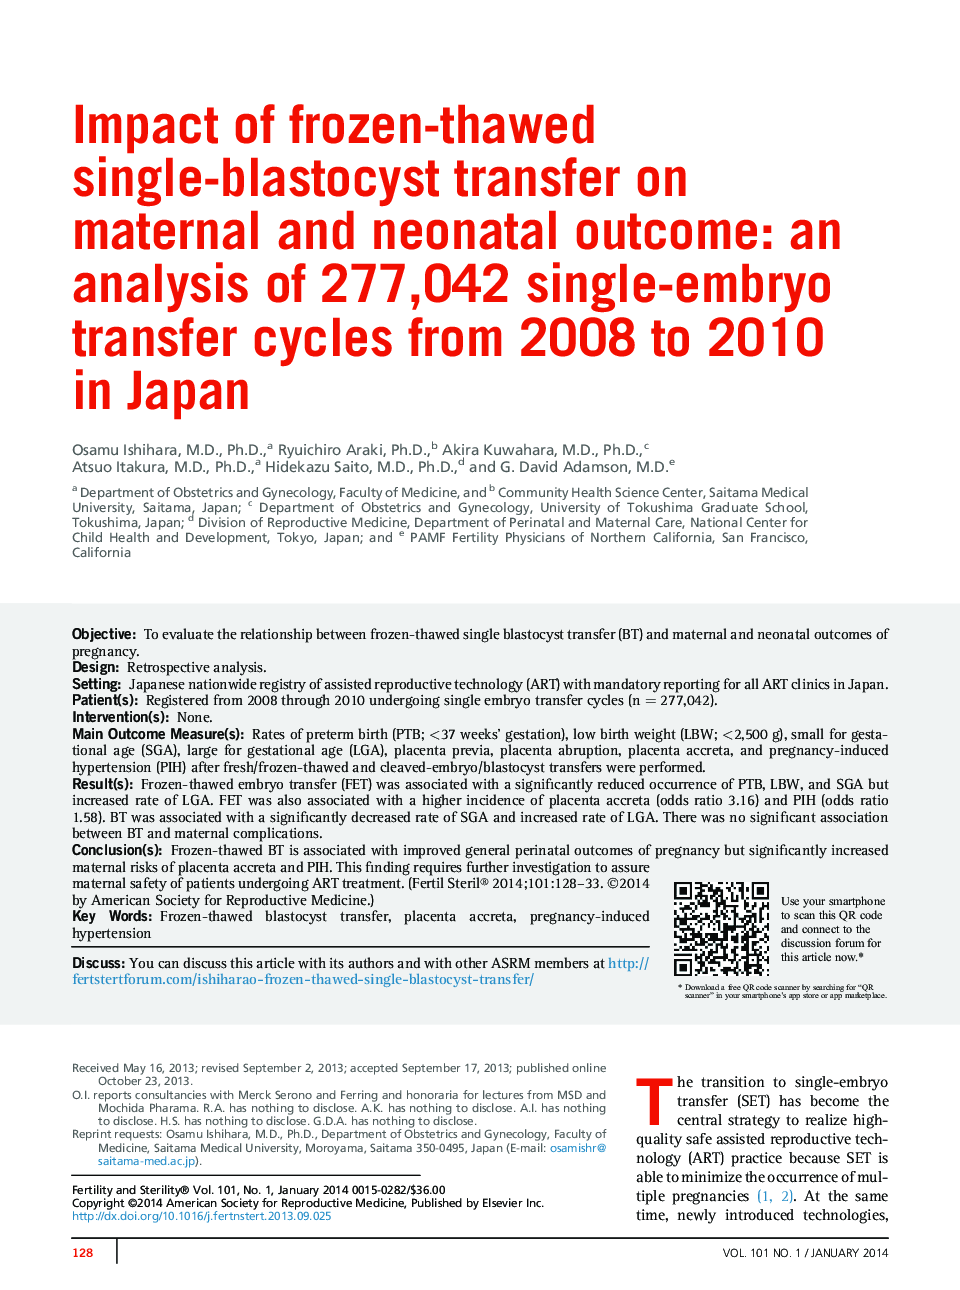 تأثیر انتقال تک گلوبواستوکیست یخ زده و منجمد بر پیامدهای مادران و نوزادان: تجزیه و تحلیل 277،442 سیکل تک جنین از سال 2008 تا 2010 در ژاپن 